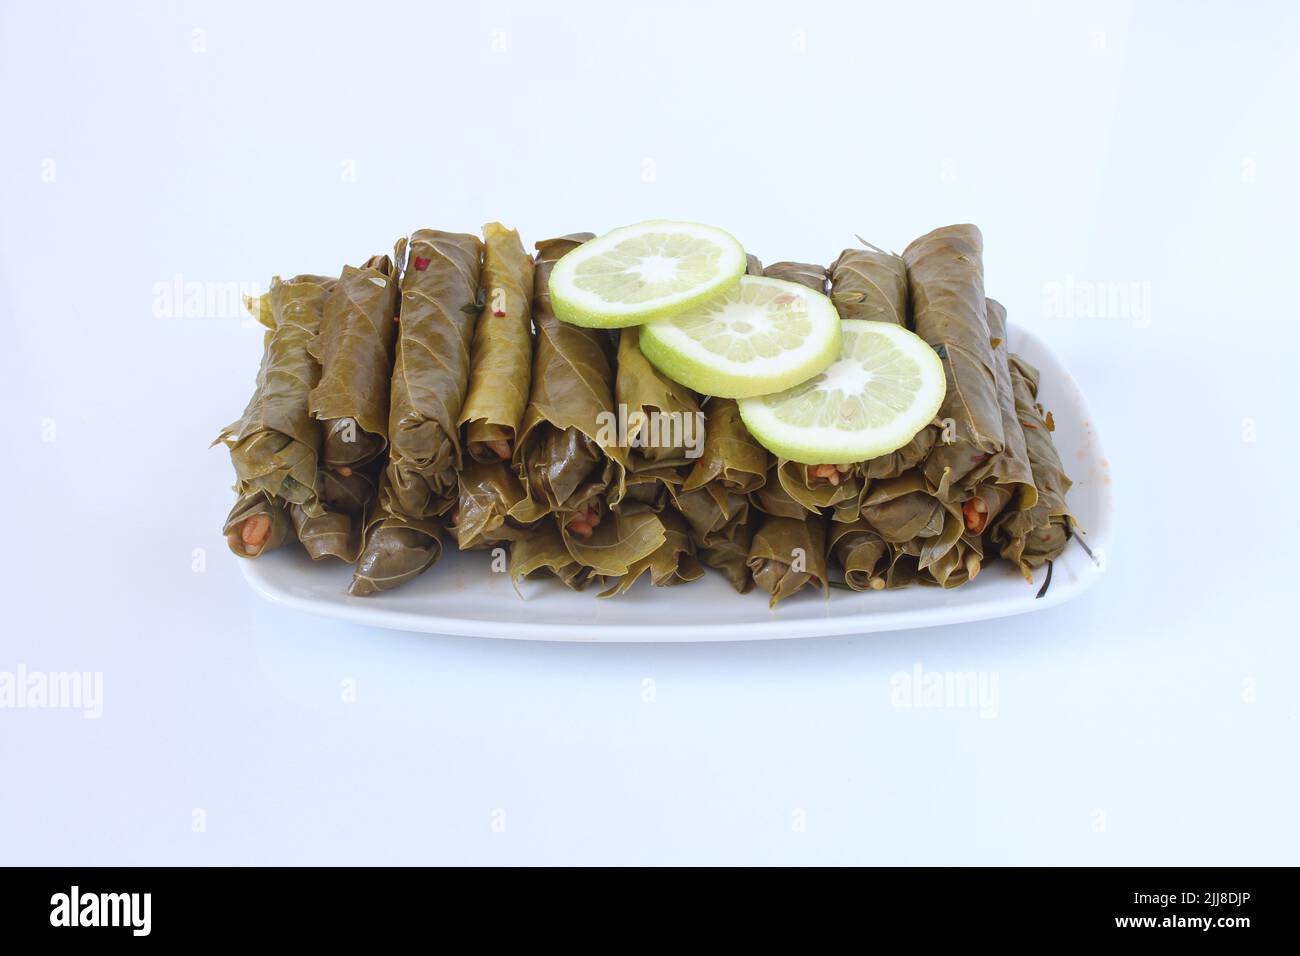 Cuisine turque ou grecque nourriture Yaprak Sarma (enveloppé farci) avec des tranches de citron. Feuilles de raisin farcies au riz isolées sur fond blanc. Banque D'Images